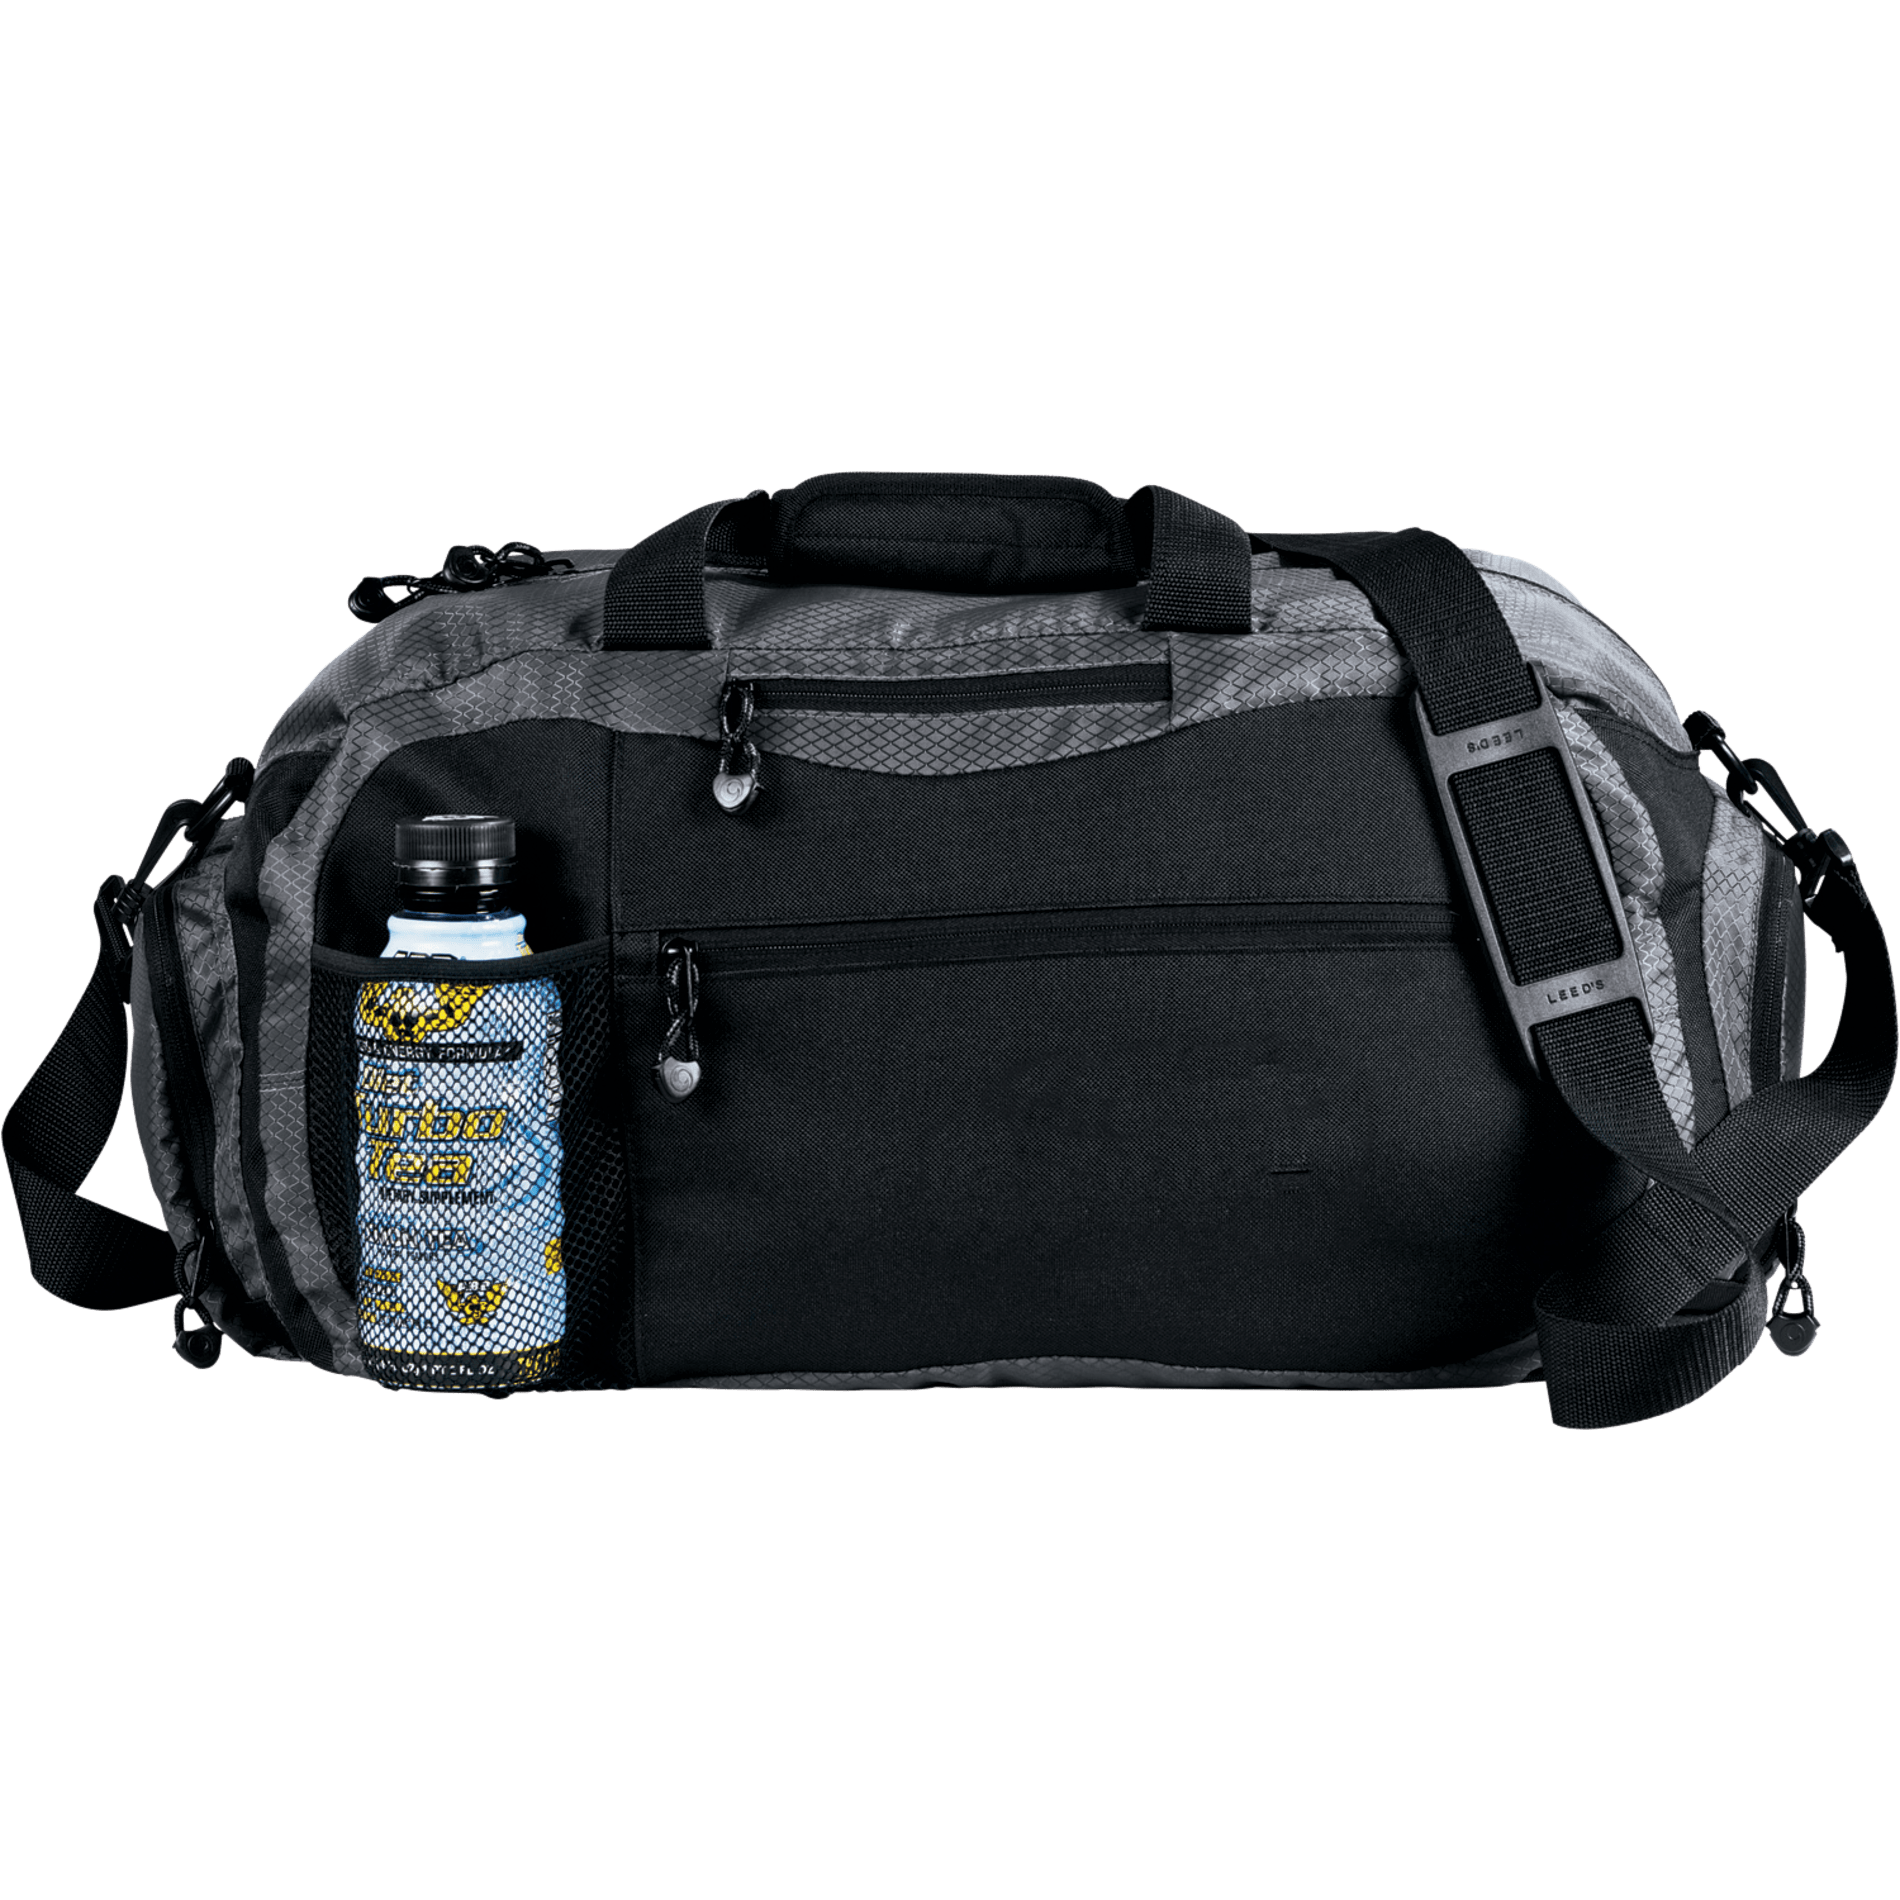 LEEDS 4600-80 - Attivo Sport 20" Duffel Bag